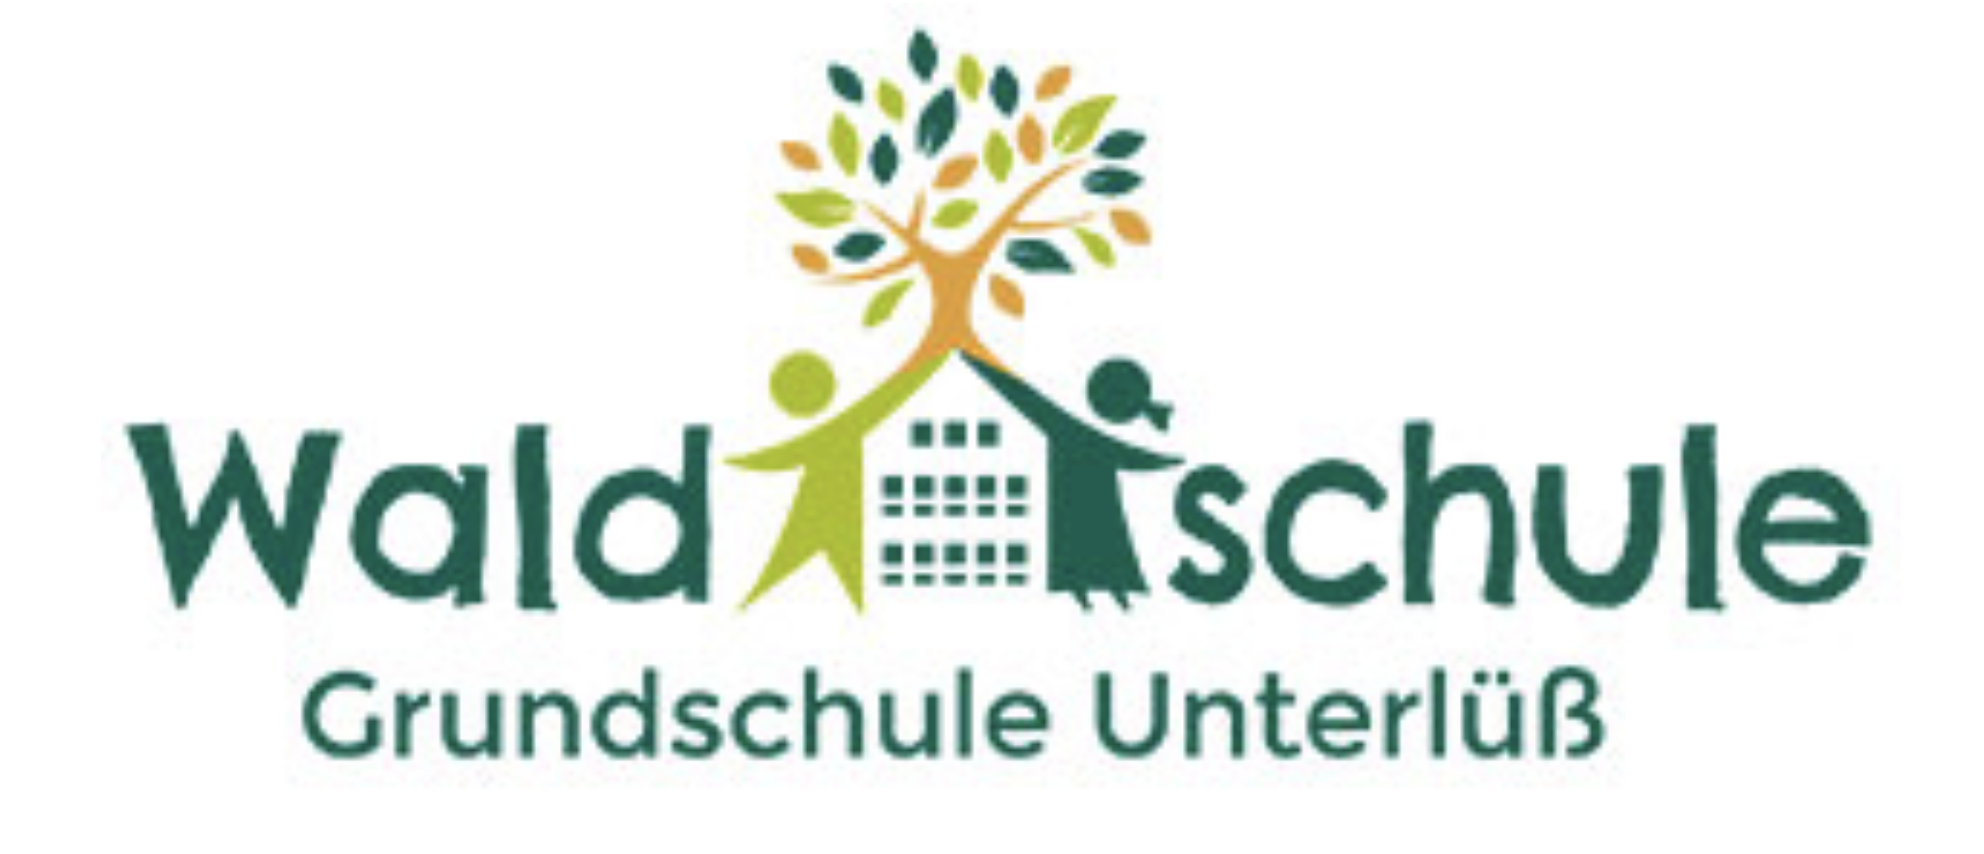 Waldschule Grundschule Unterlüß